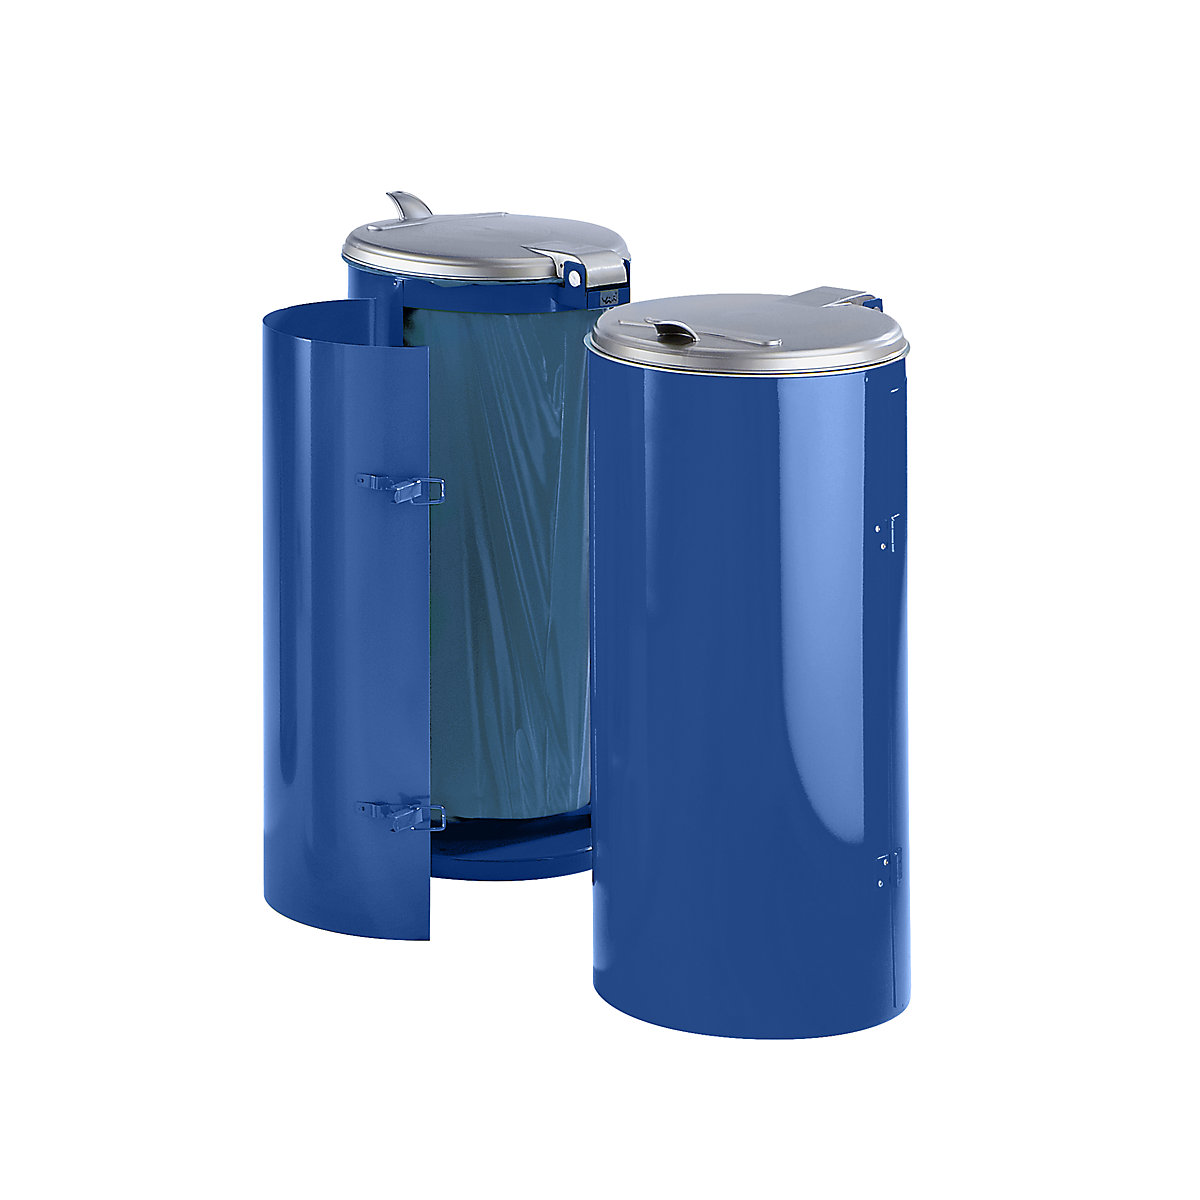 Colector de residuos de chapa de acero – VAR, para 120 l de capacidad, con puerta de una hoja, azul con tapa de plástico plateada-3